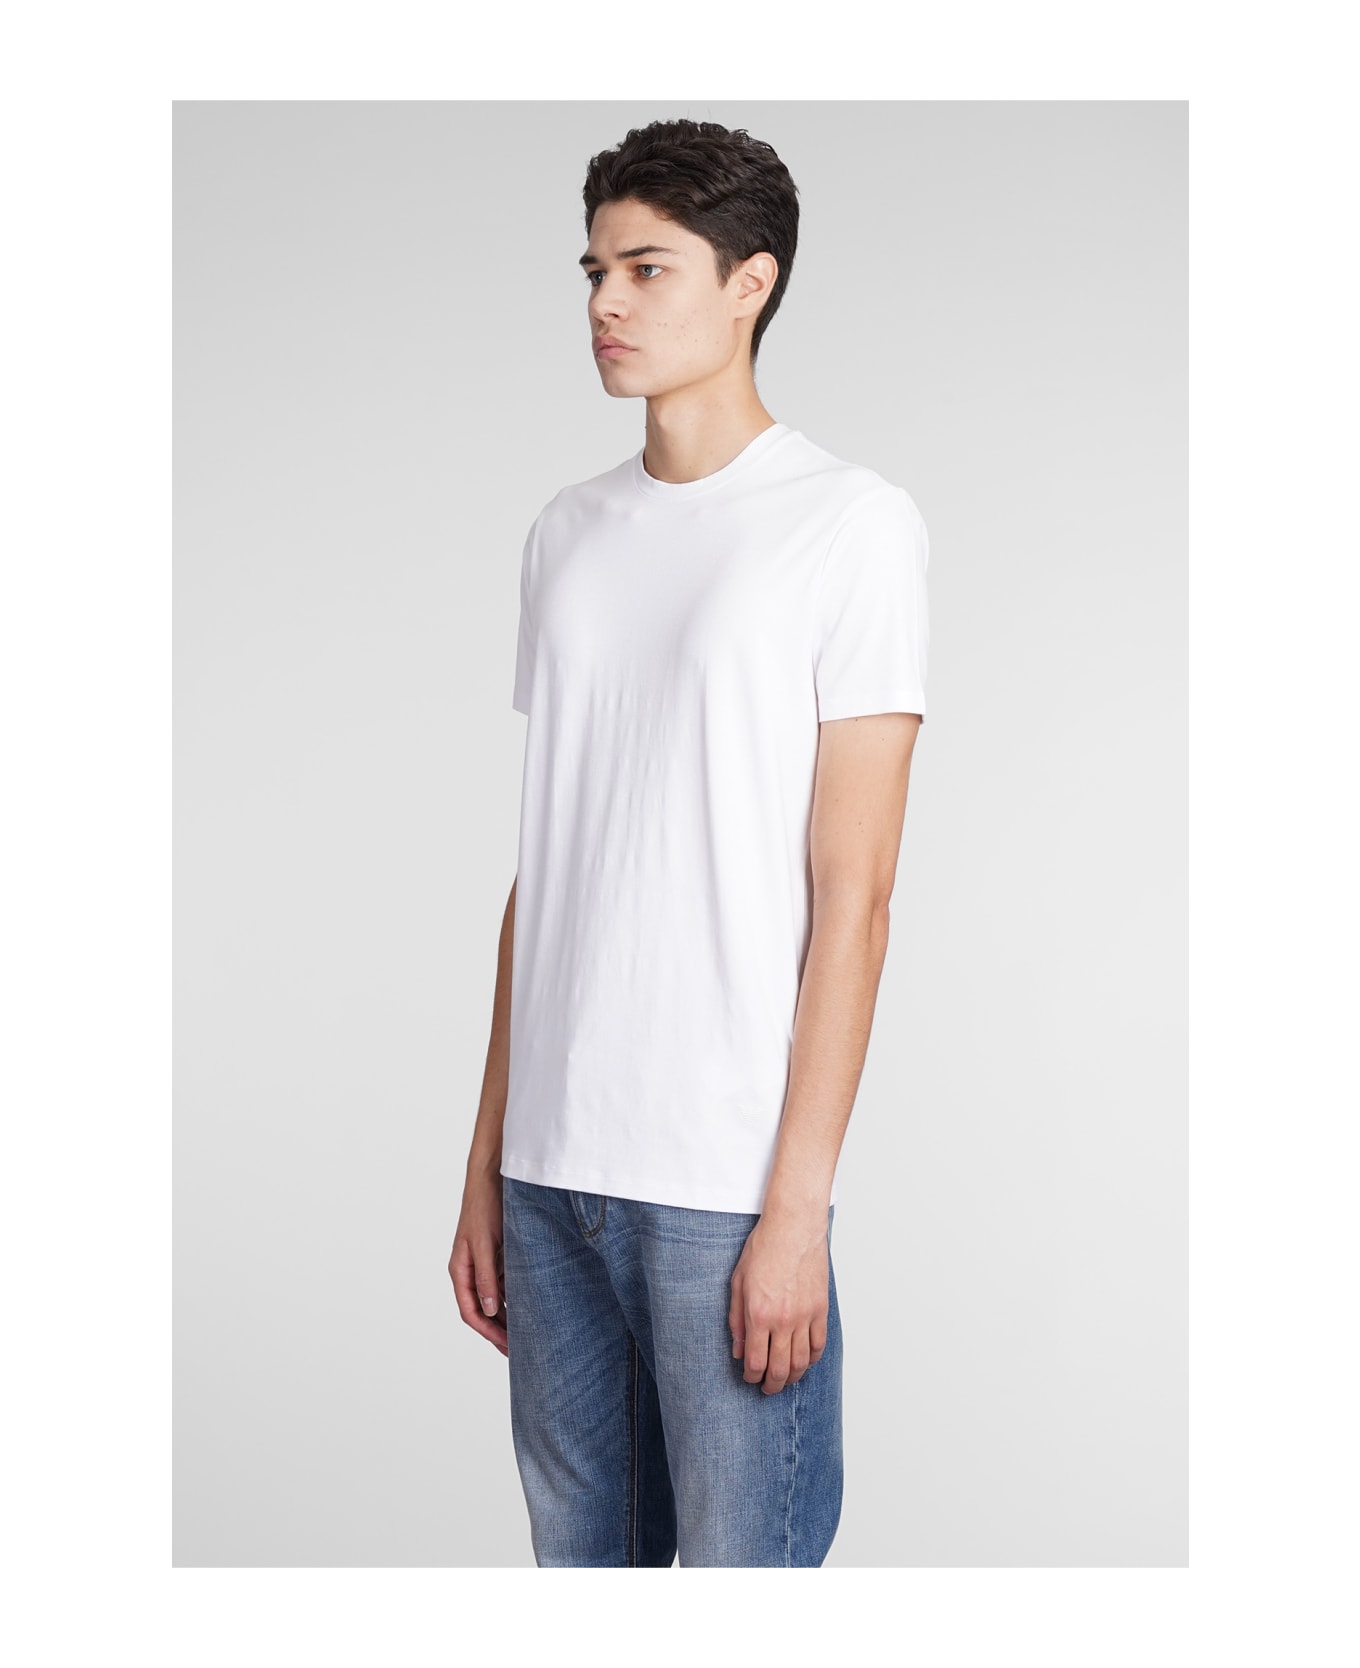 Emporio Armani T-shirt In White Viscose - white